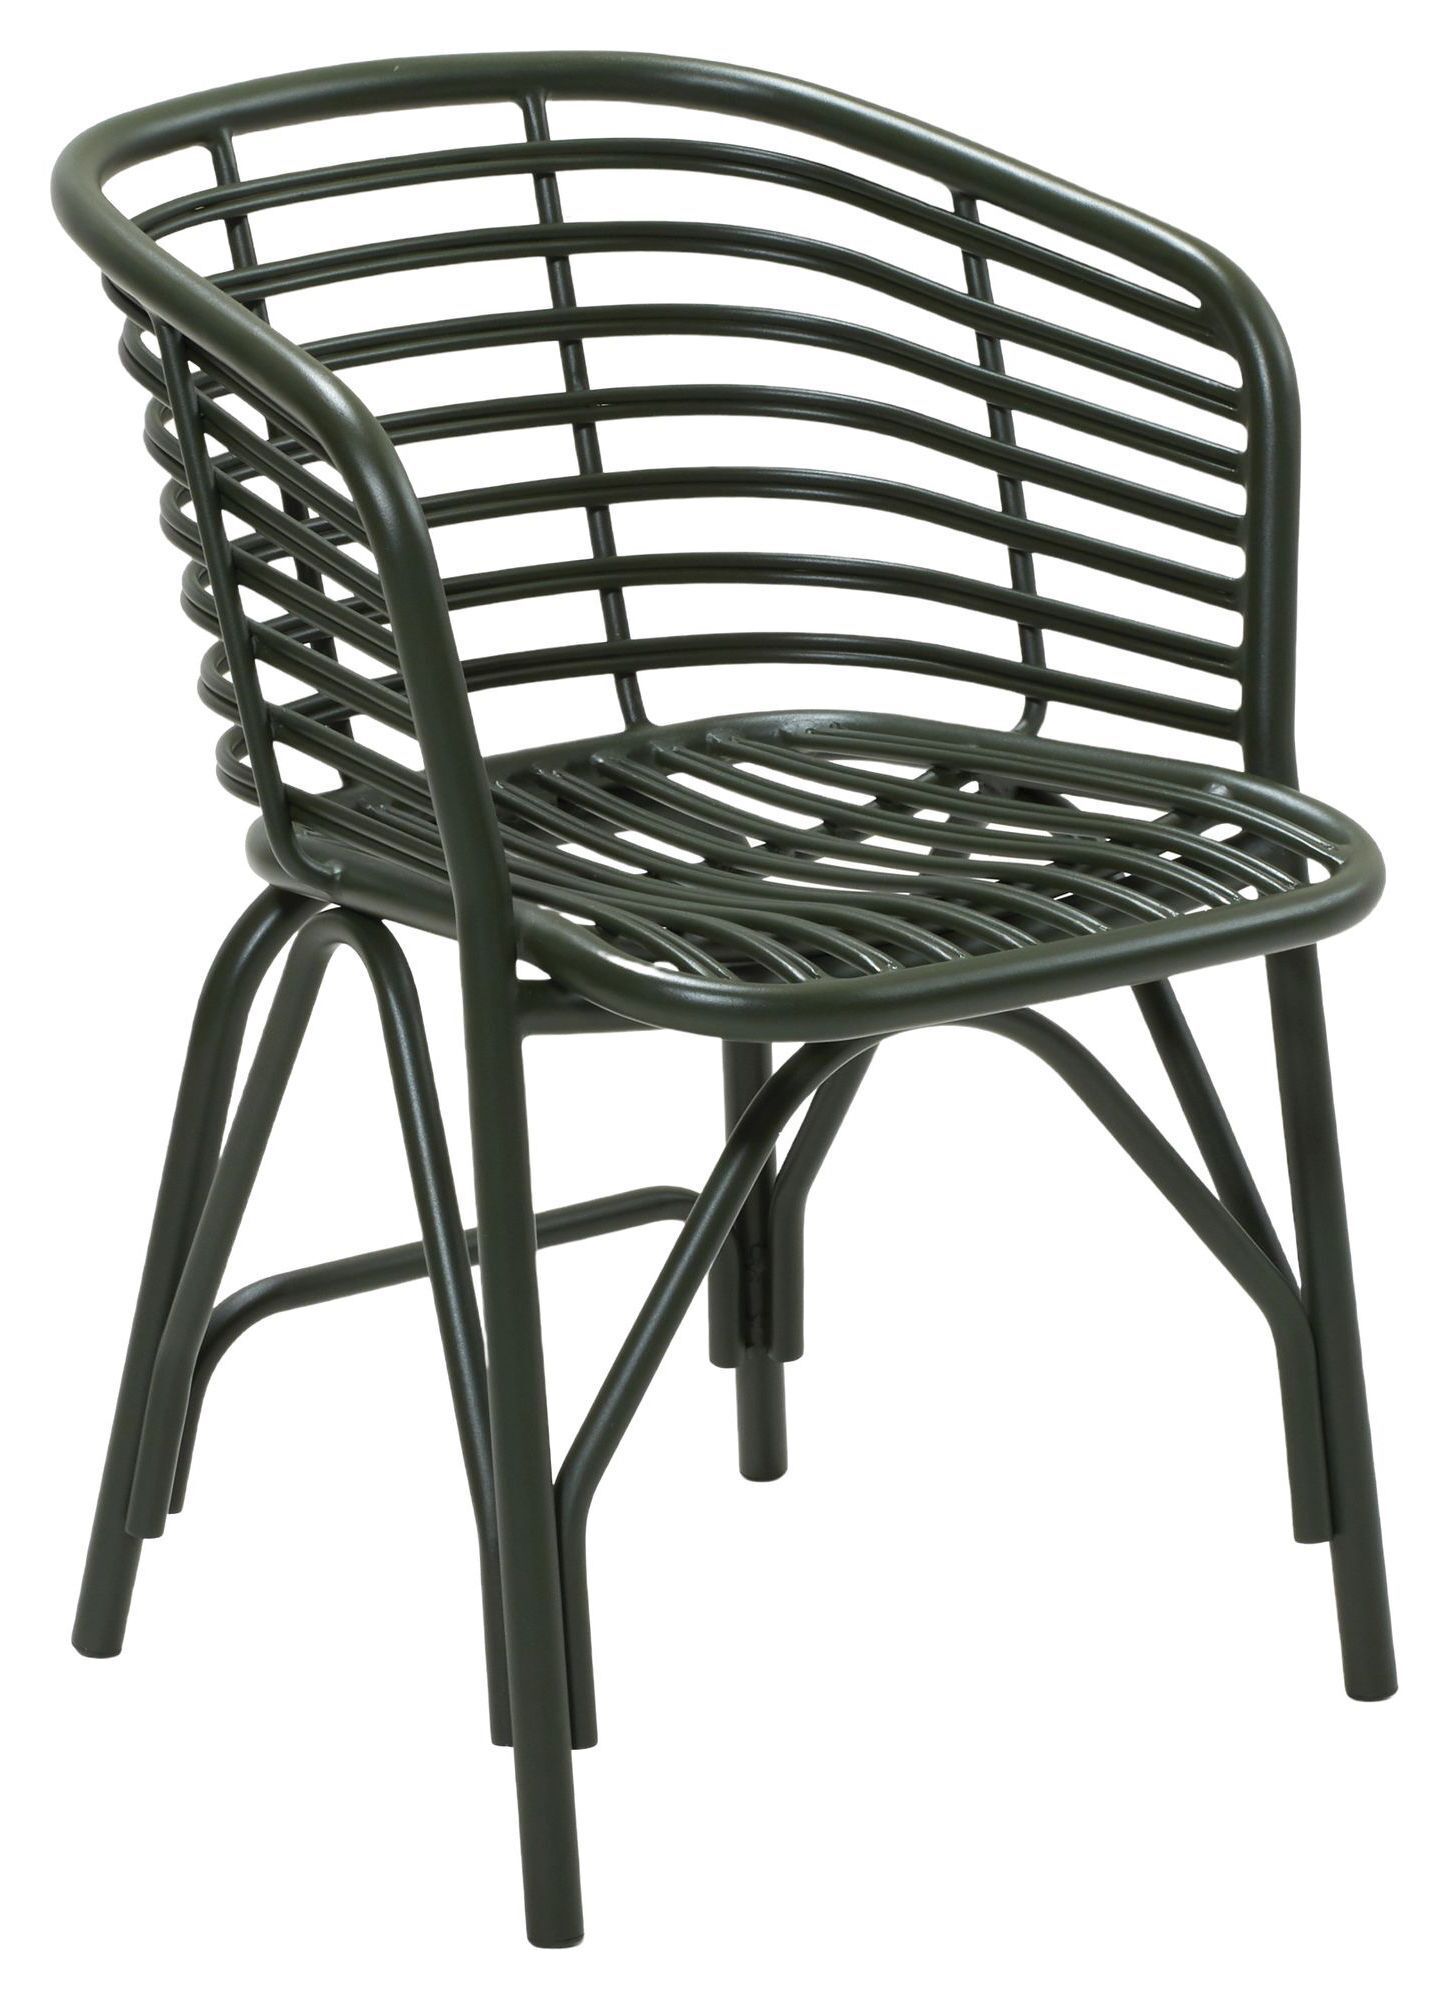 Cane-line Blend stol, OUTDOOR, Grønn   Unoliving